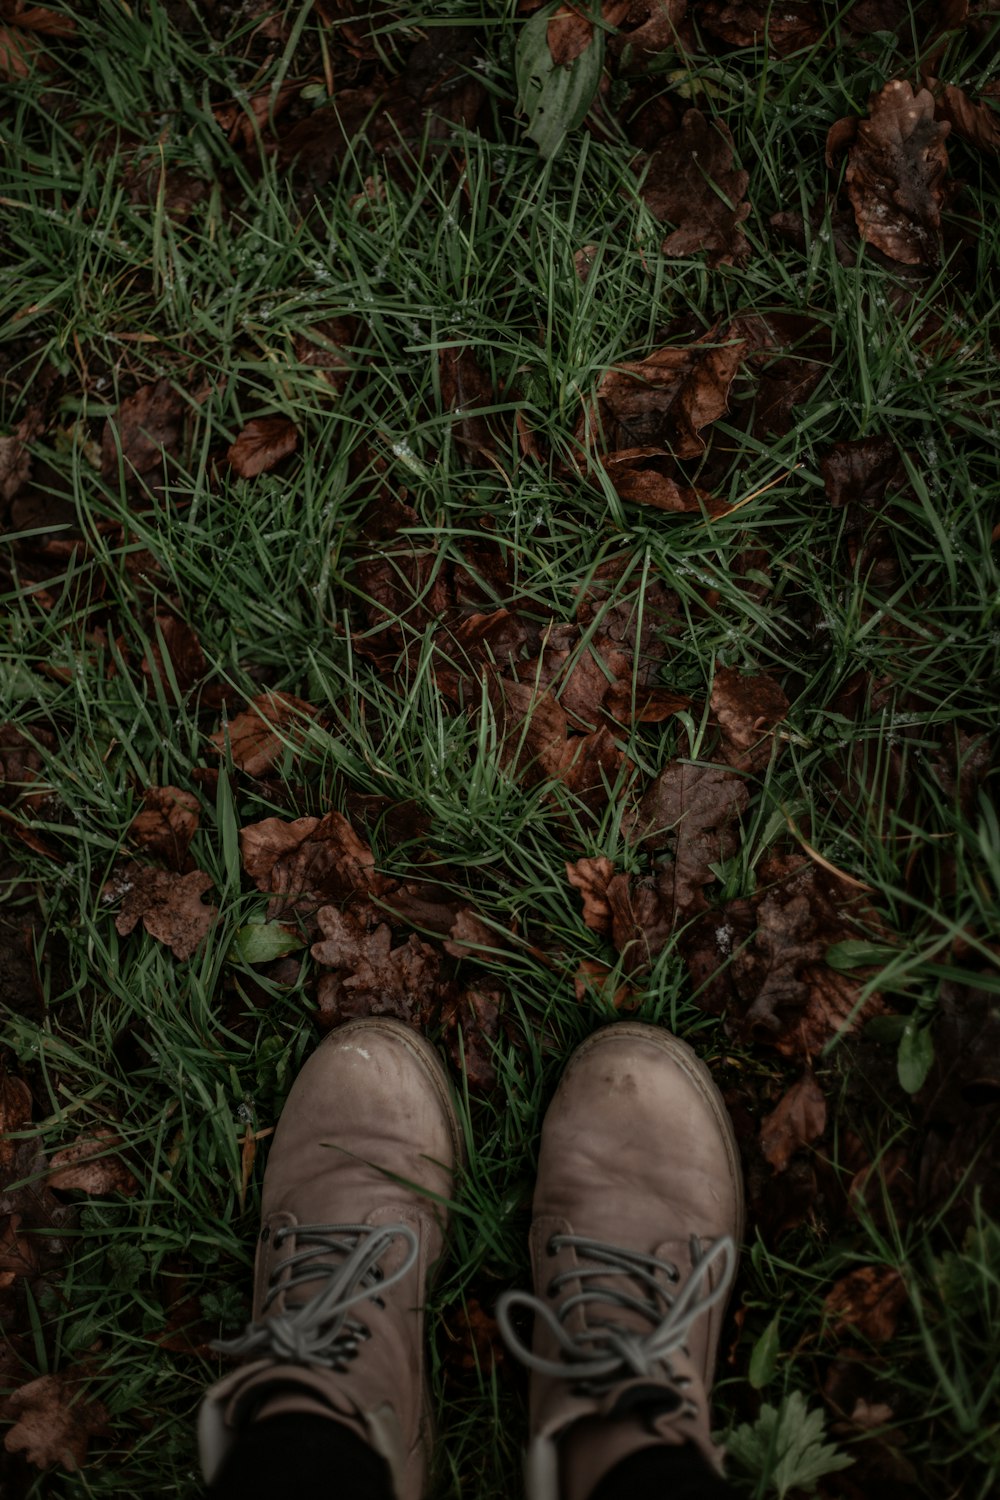 Persona con zapatos de cuero marrón de pie sobre hojas secas marrones